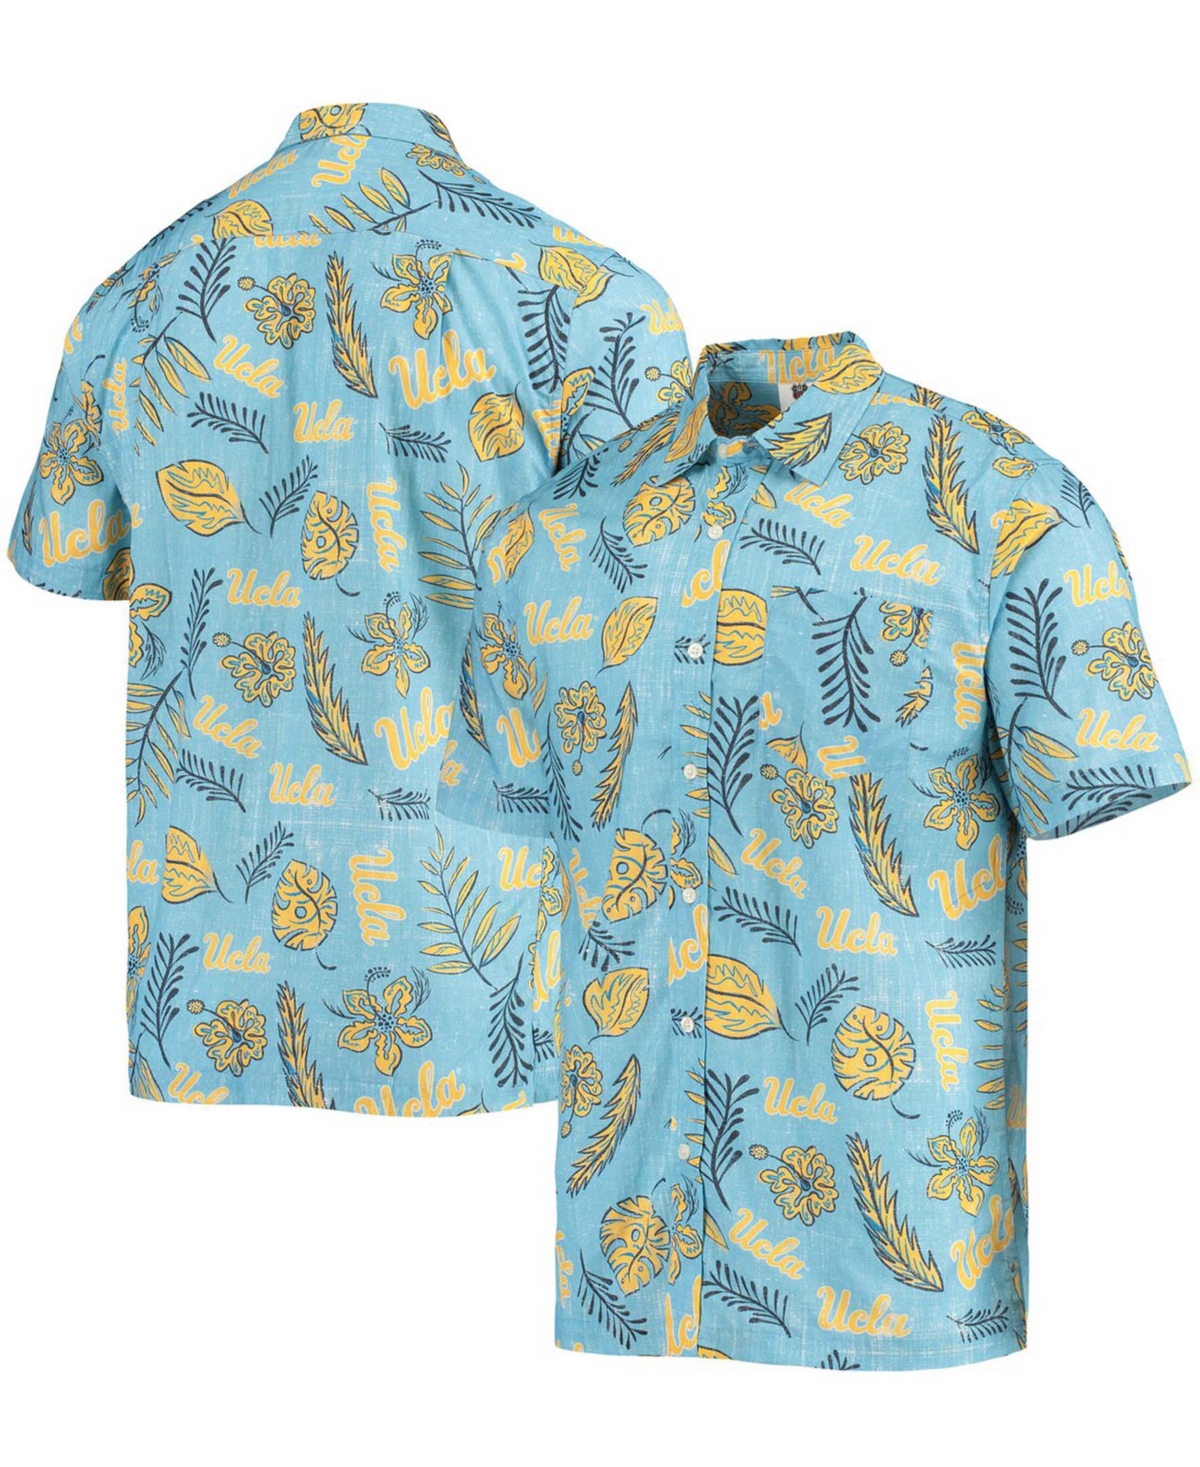 Men's Light Blue Ucla Bruins Vintage-Like Floral Button-Up Shirt - Light Blue